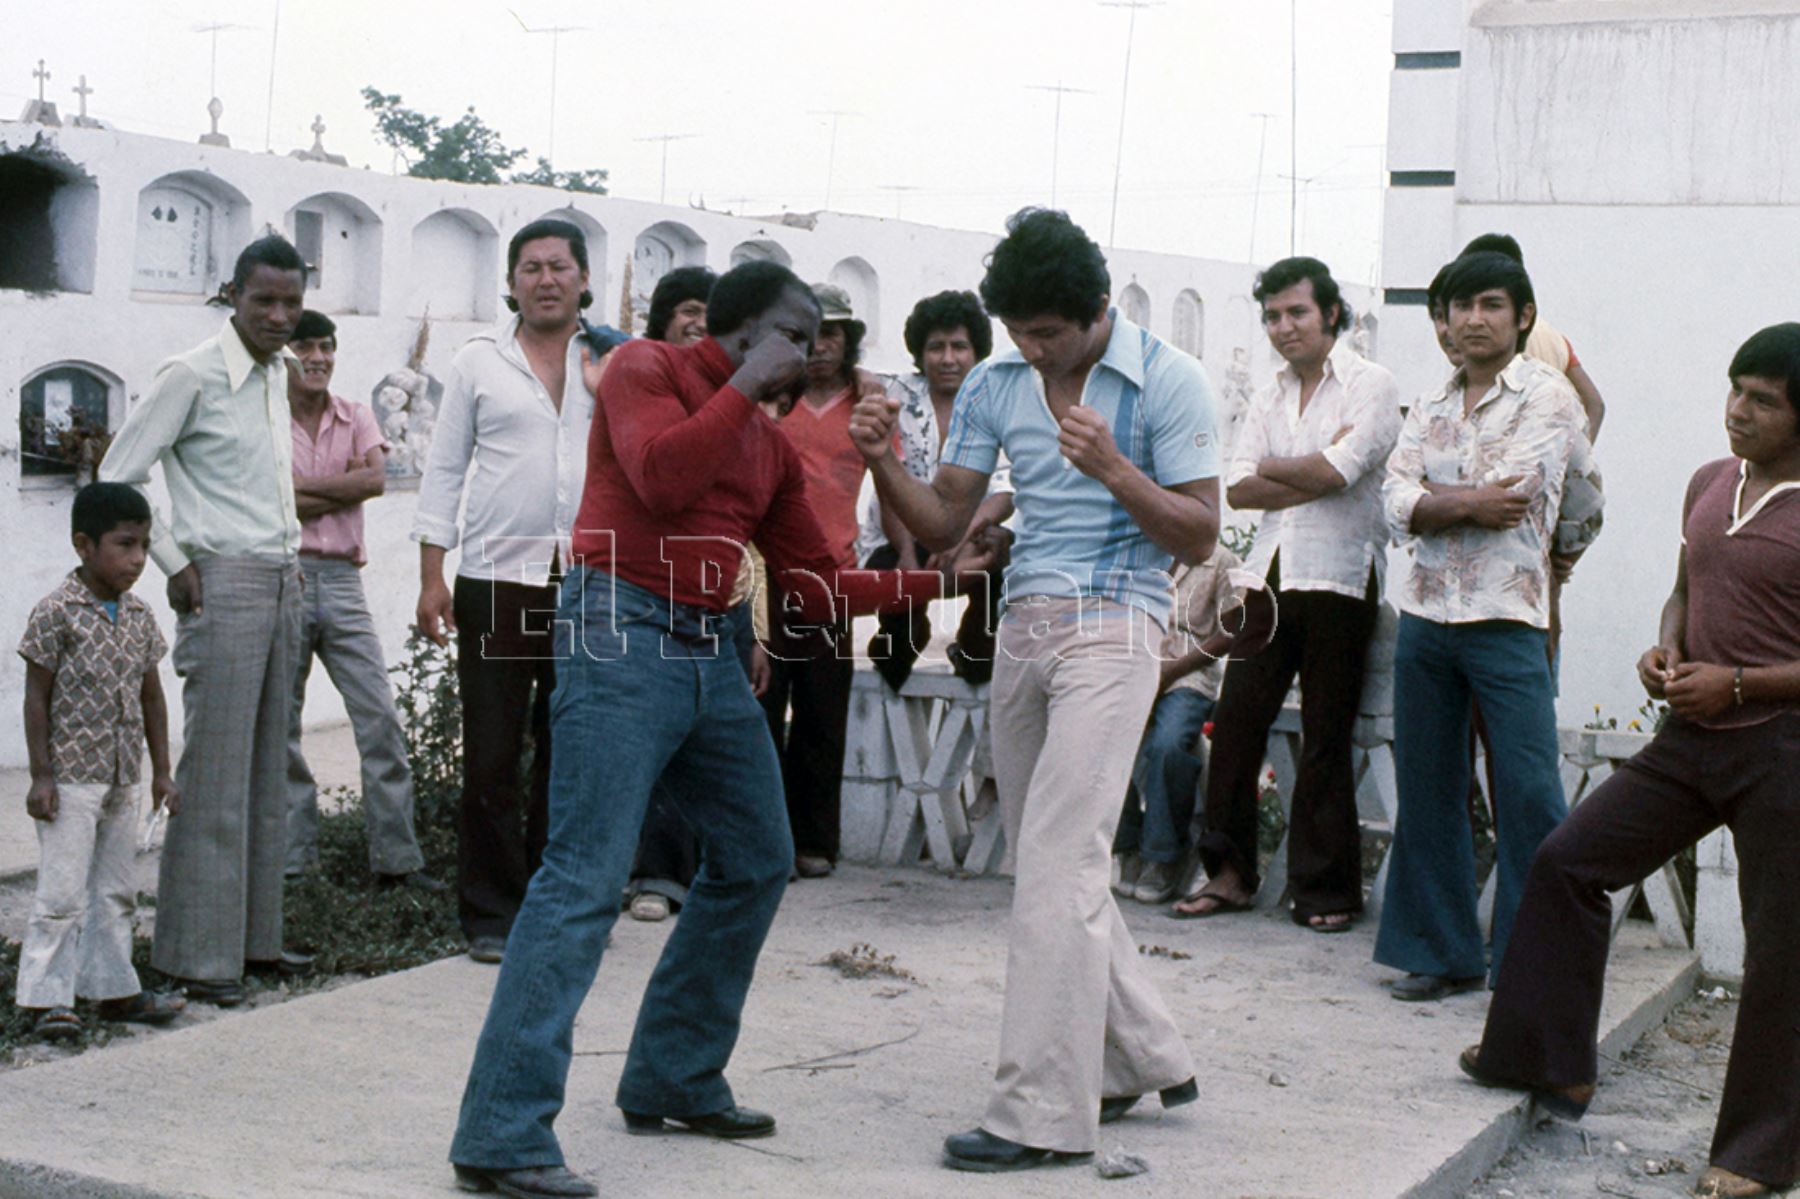 Huaral - 3 enero 1979 / Fernando Rocco ensaya unos golpes en el cementerio de Huaral.